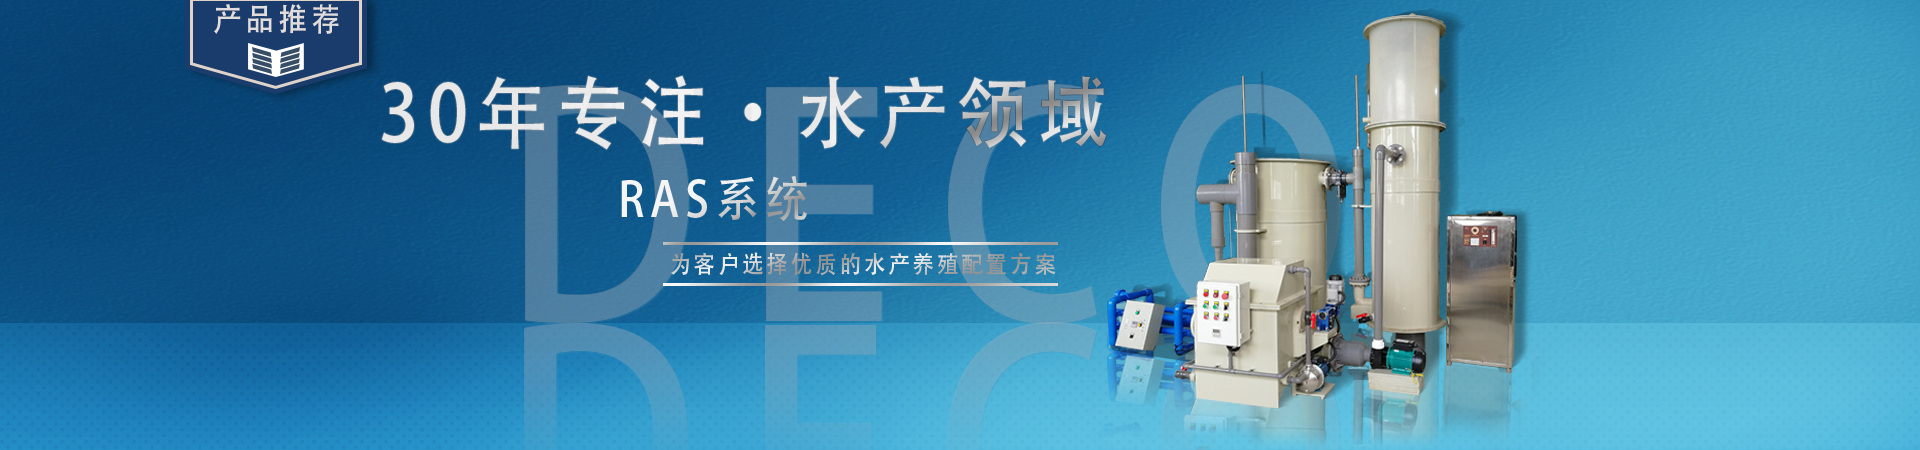 南京大岛数码科技工程有限公司